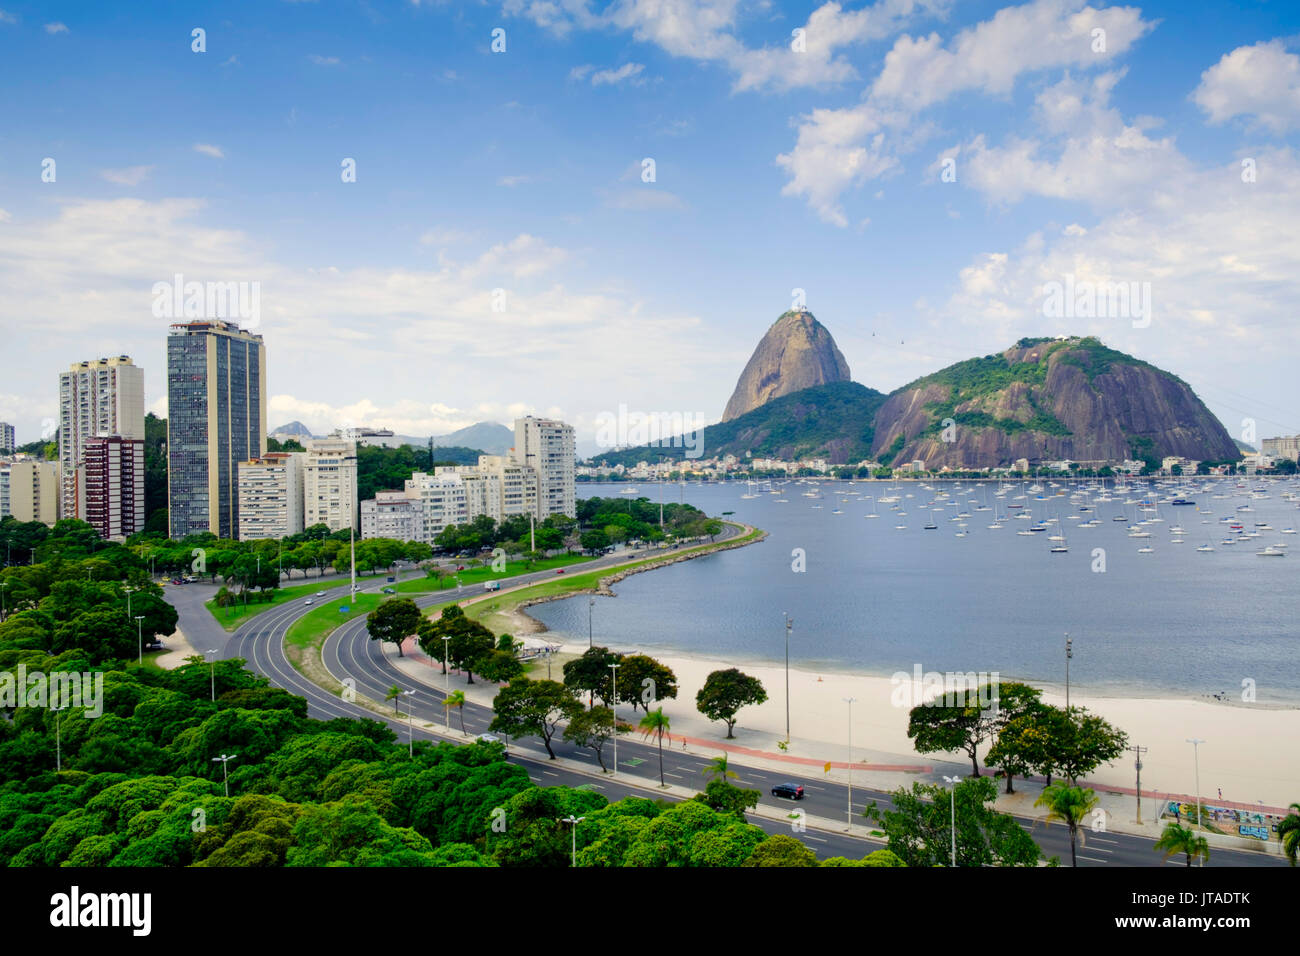 The Sugar Loaf and Botafogo Bay, Botafogo neighbourhood, Rio de Janeiro, Brazil Stock Photo